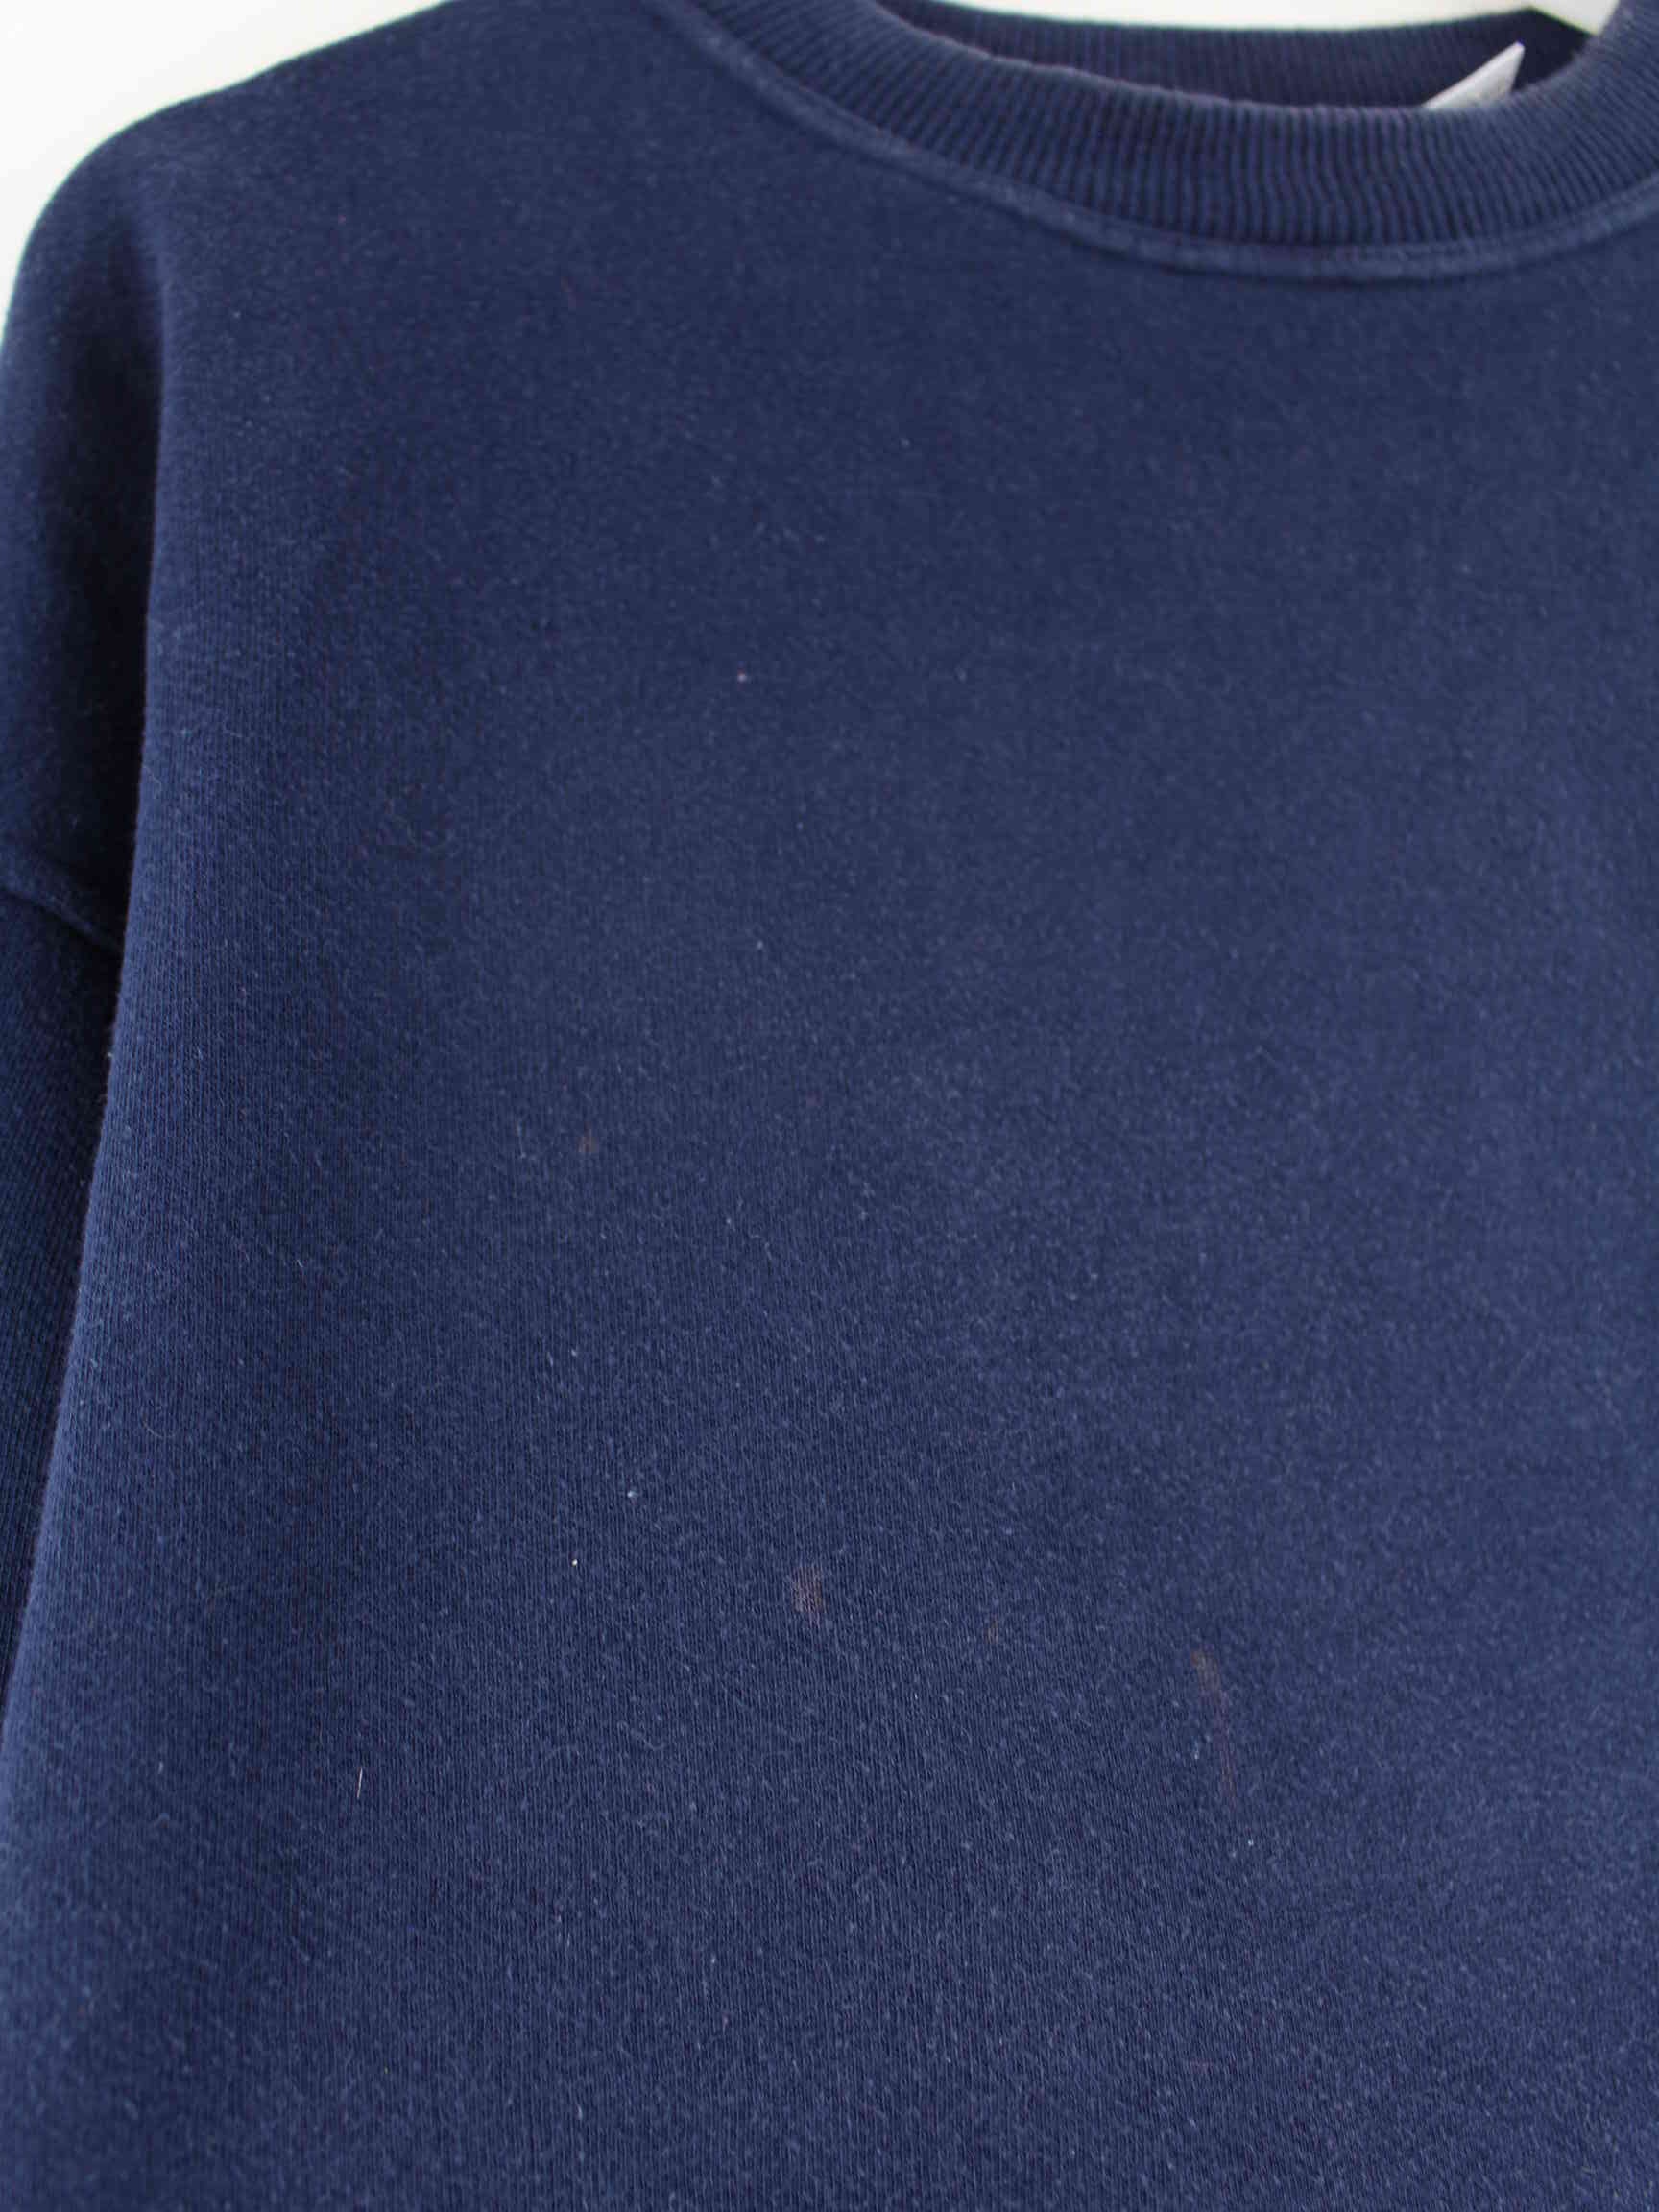 Quiksilver 1973 Vintage Print Sweater Blau L (detail image 3)